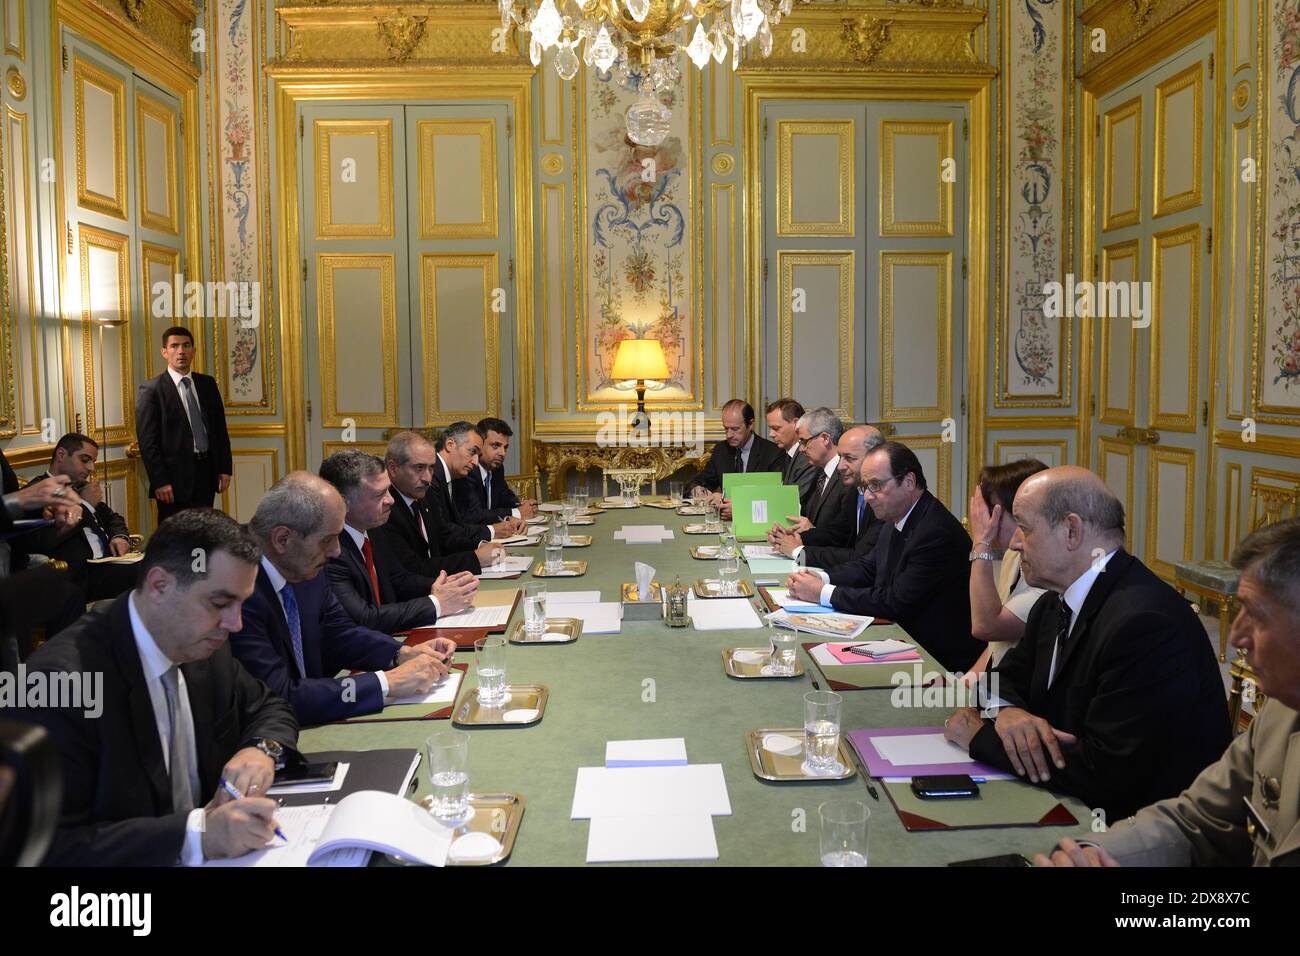 Entretiens entre le président français François Hollande (4e de R) et le roi Abdallah II de Jordanie (4e de L) à l'Elysée Palace de Paris, France, le 17 septembre 2014. Photo par Ammar ABD RABBO/ABACAPRESS.COM Banque D'Images